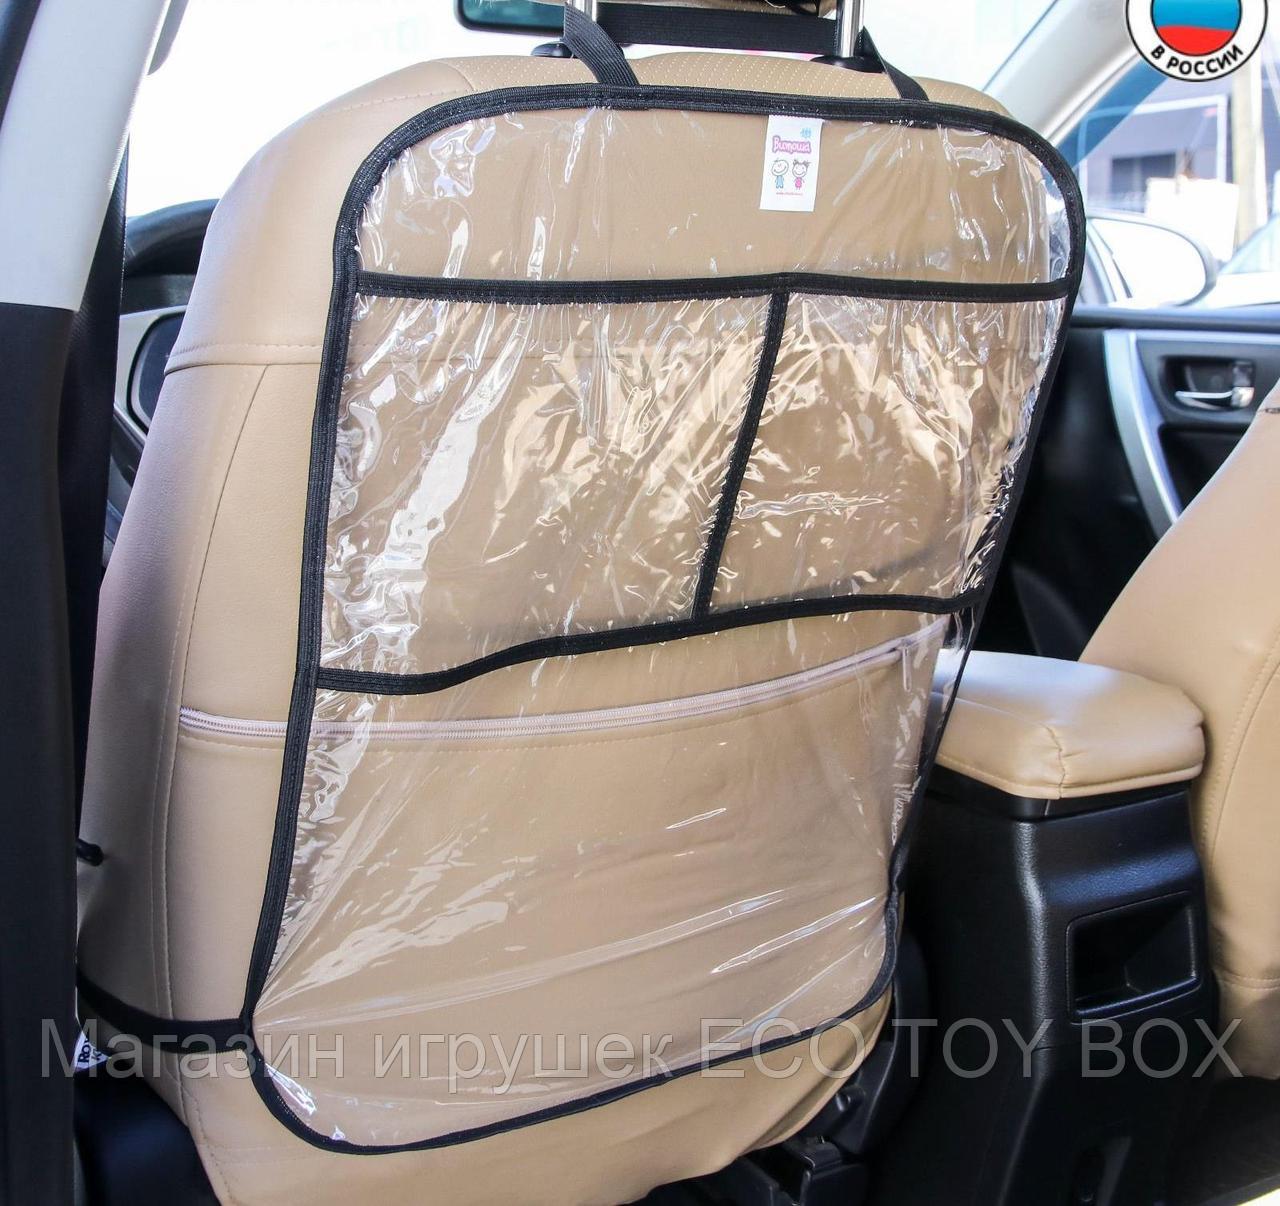 Накидка-незапинайка на спинку автомобильного сиденья, с карманами, фото 1